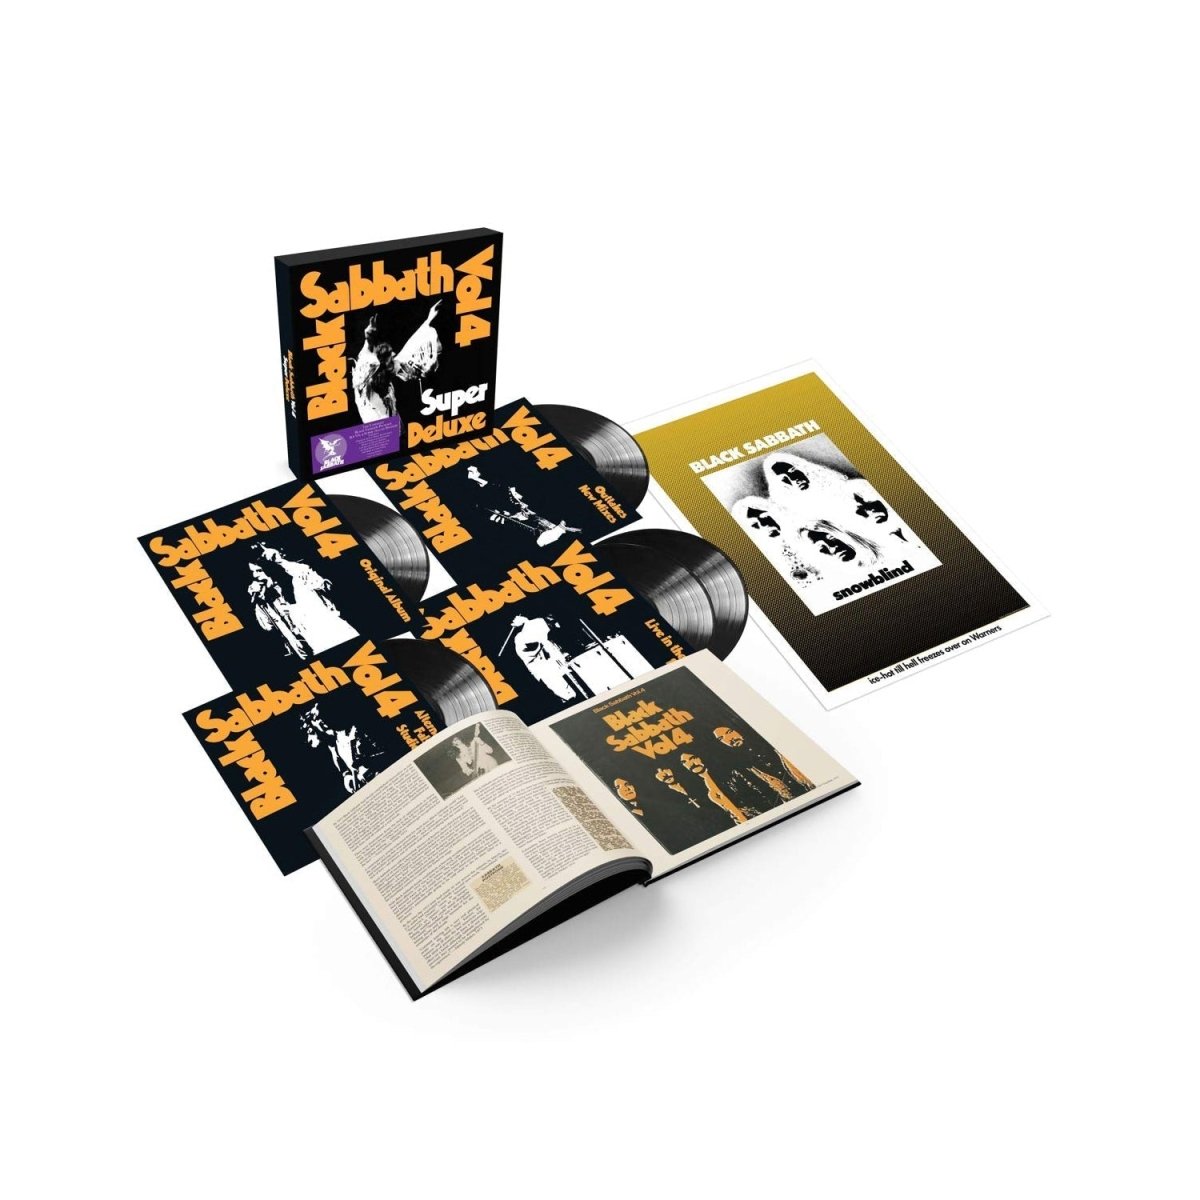 Black Sabbath - Black Sabbath Vol 4 Super Deluxe Records & LPs Vinyl